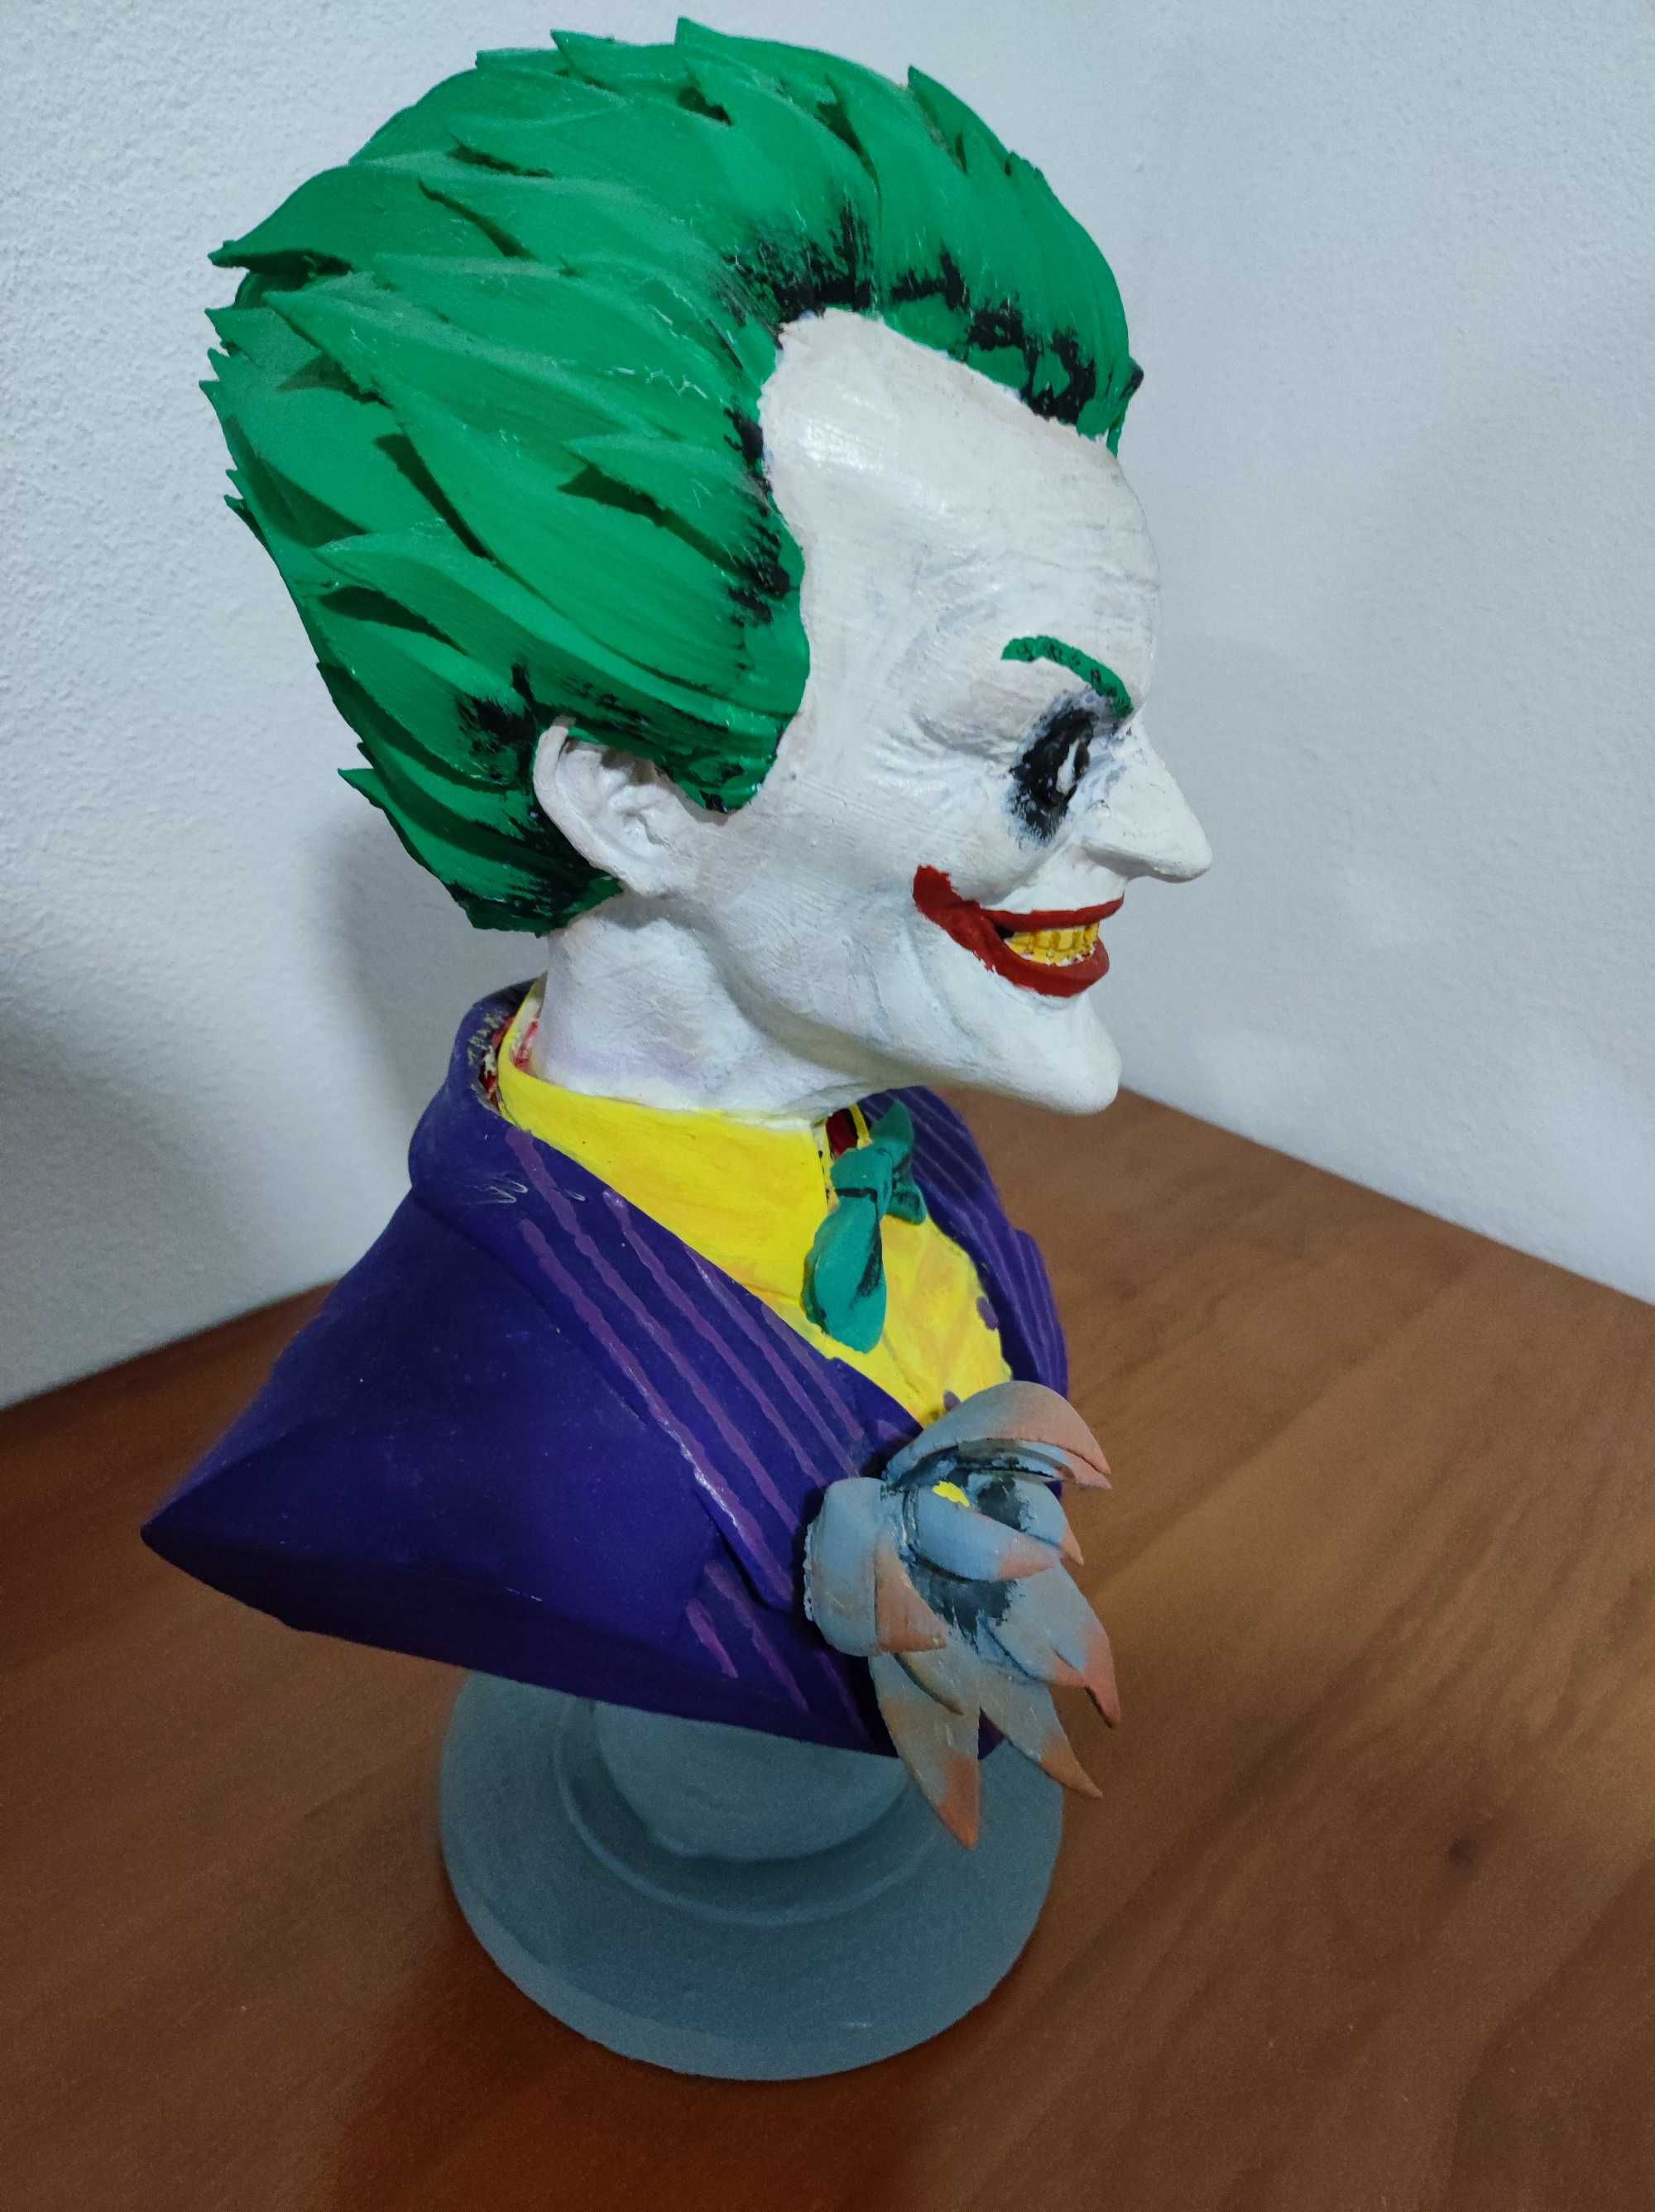 Descubra a Essência do Caos com o Busto do Joker em PLA